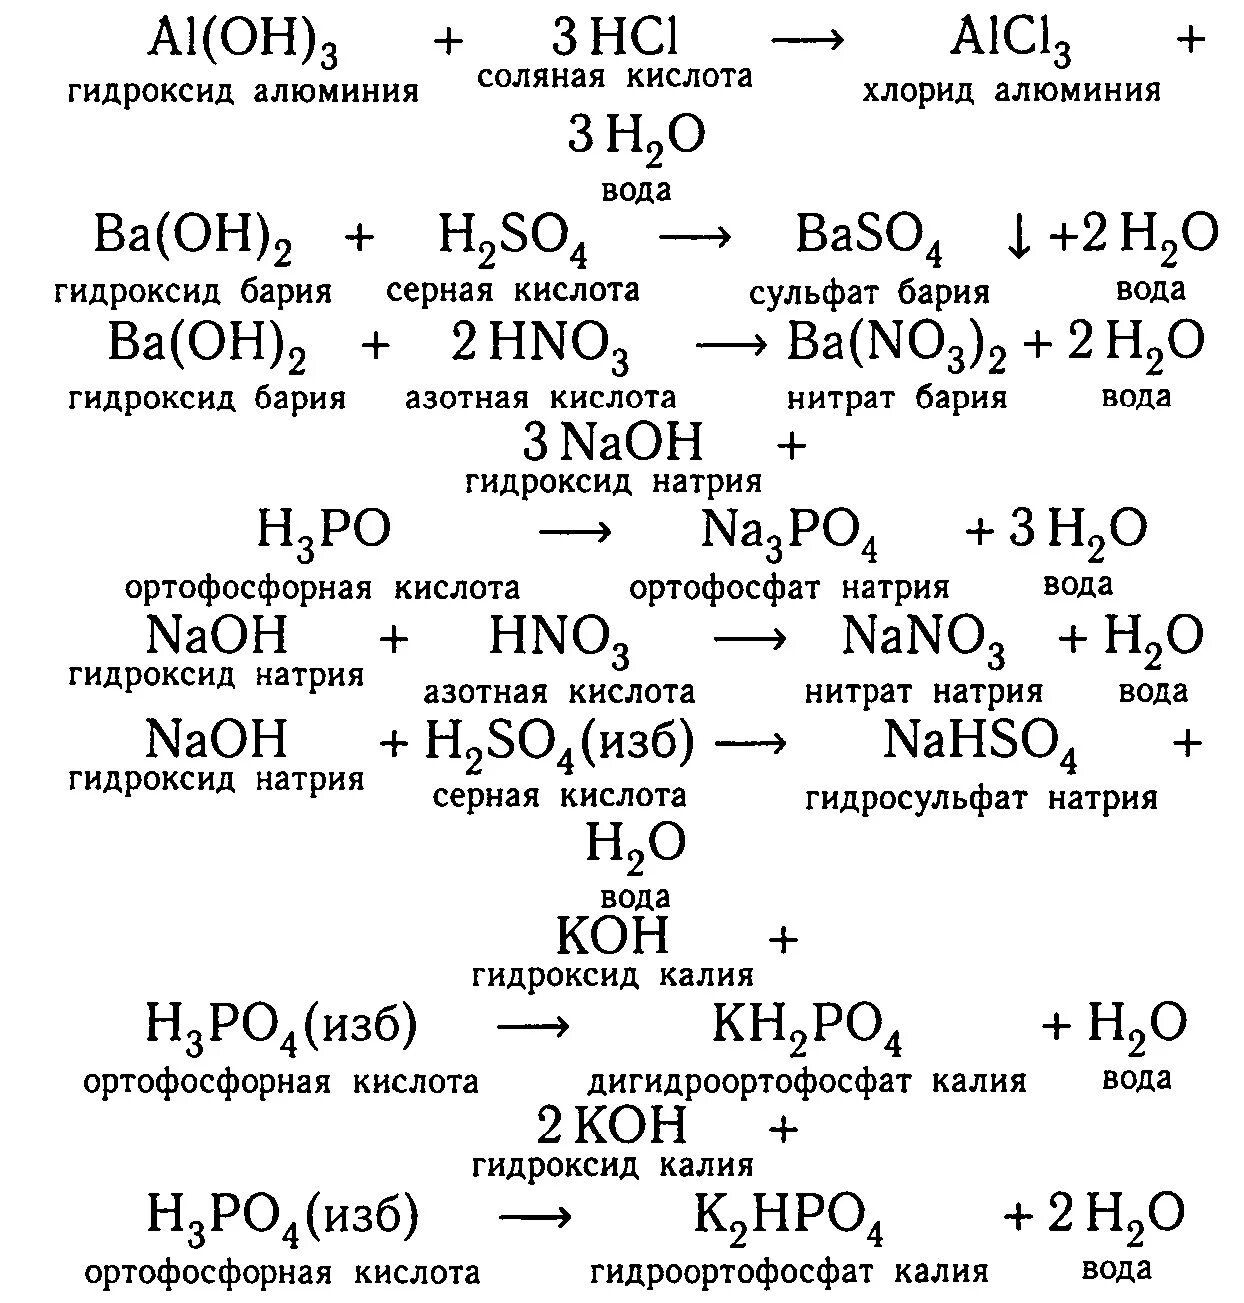 Гидроксид бария и серная кислота сульфат бария вода Тип. Сульфат алюминия плюс соляная кислота реакция. Гидроксид бария и серная кислота. Гидрокосидбария и сеоная кислота. Реакция нейтрализации гидроксида натрия азотной кислотой